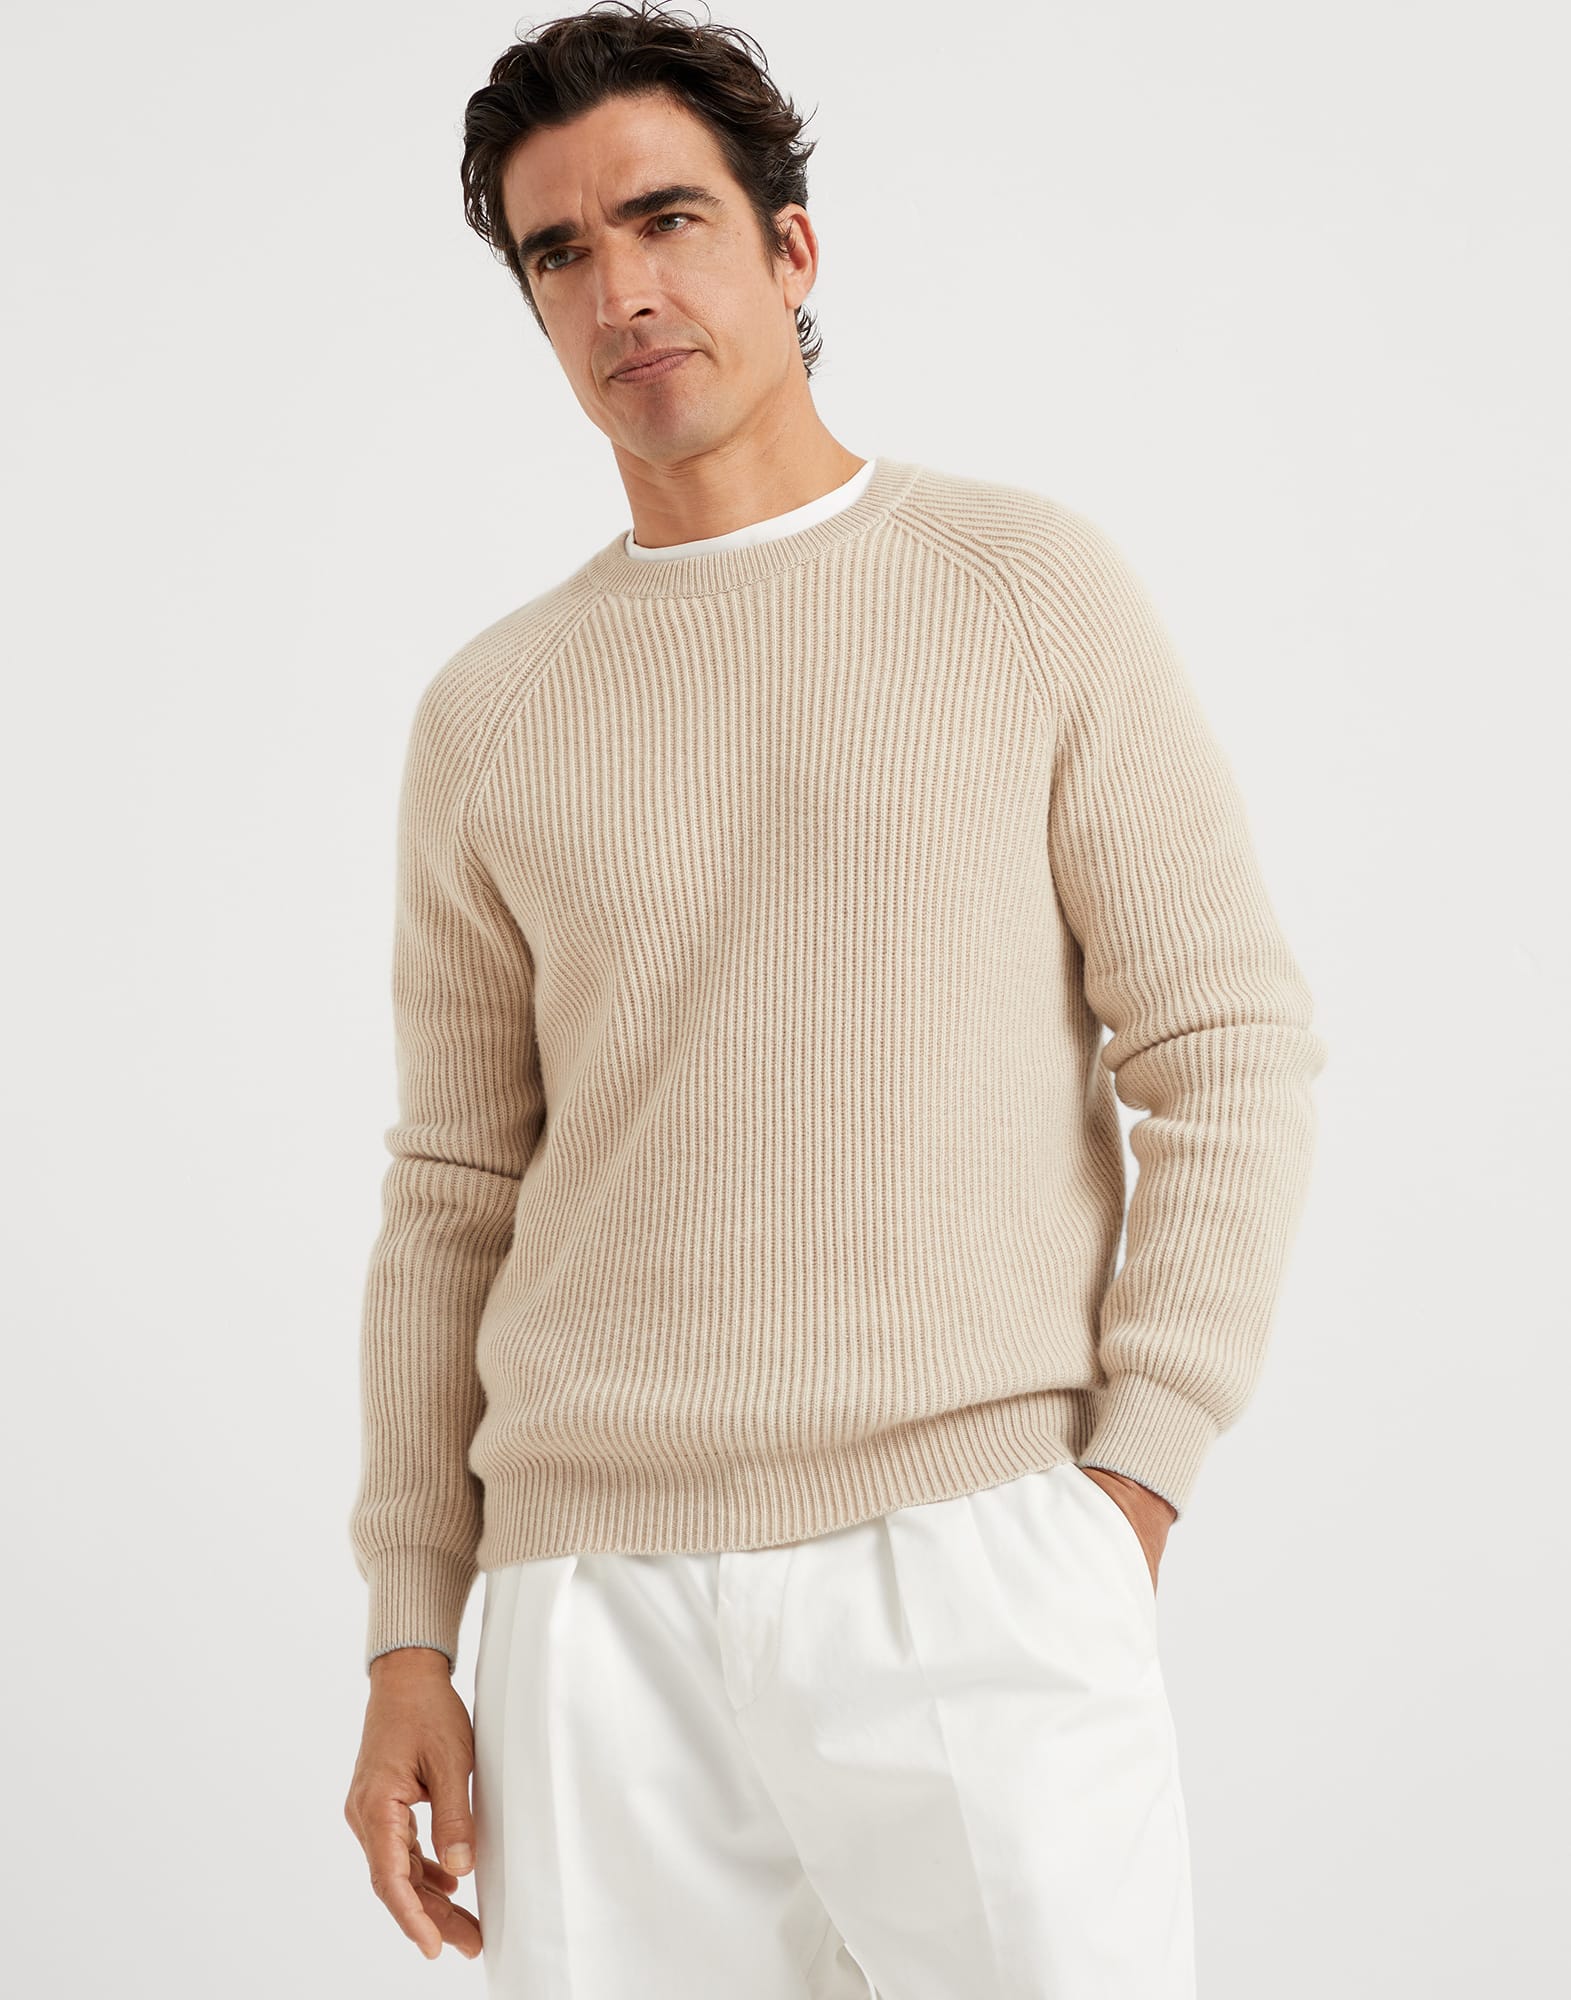 English Rib knit sweater